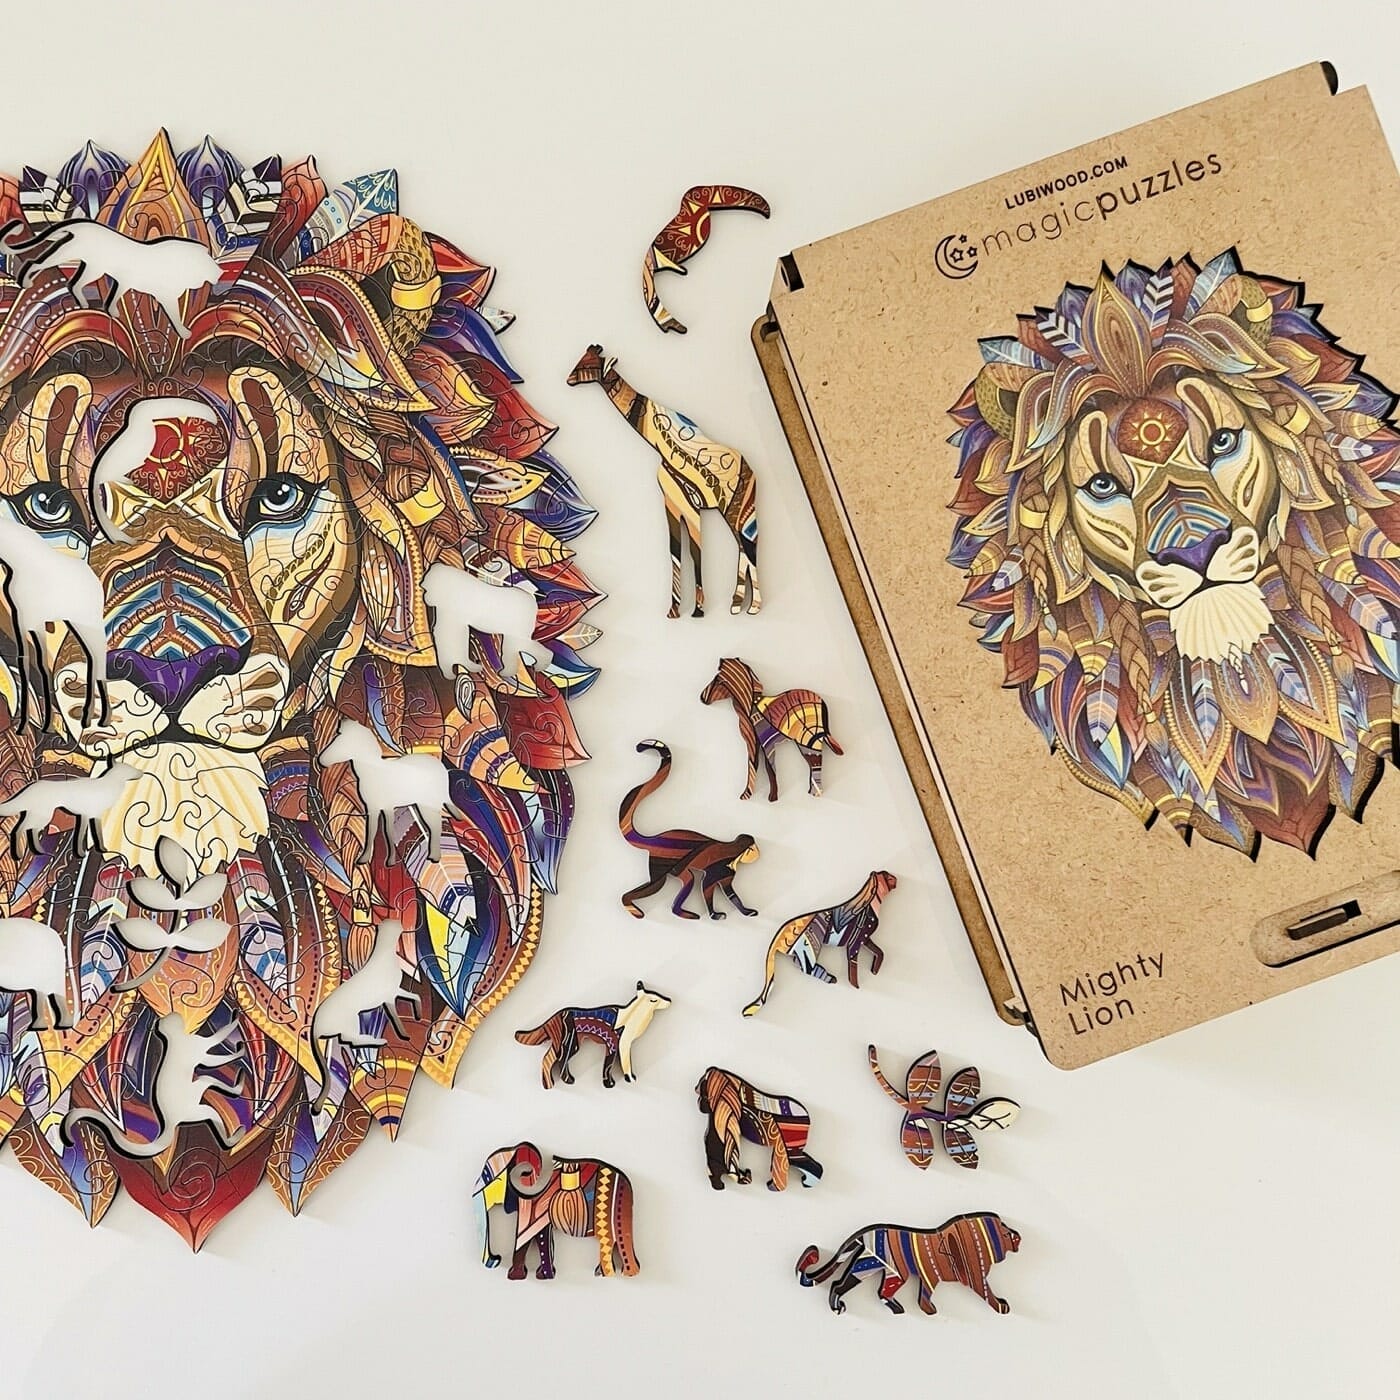 Mighty lion jigsaw